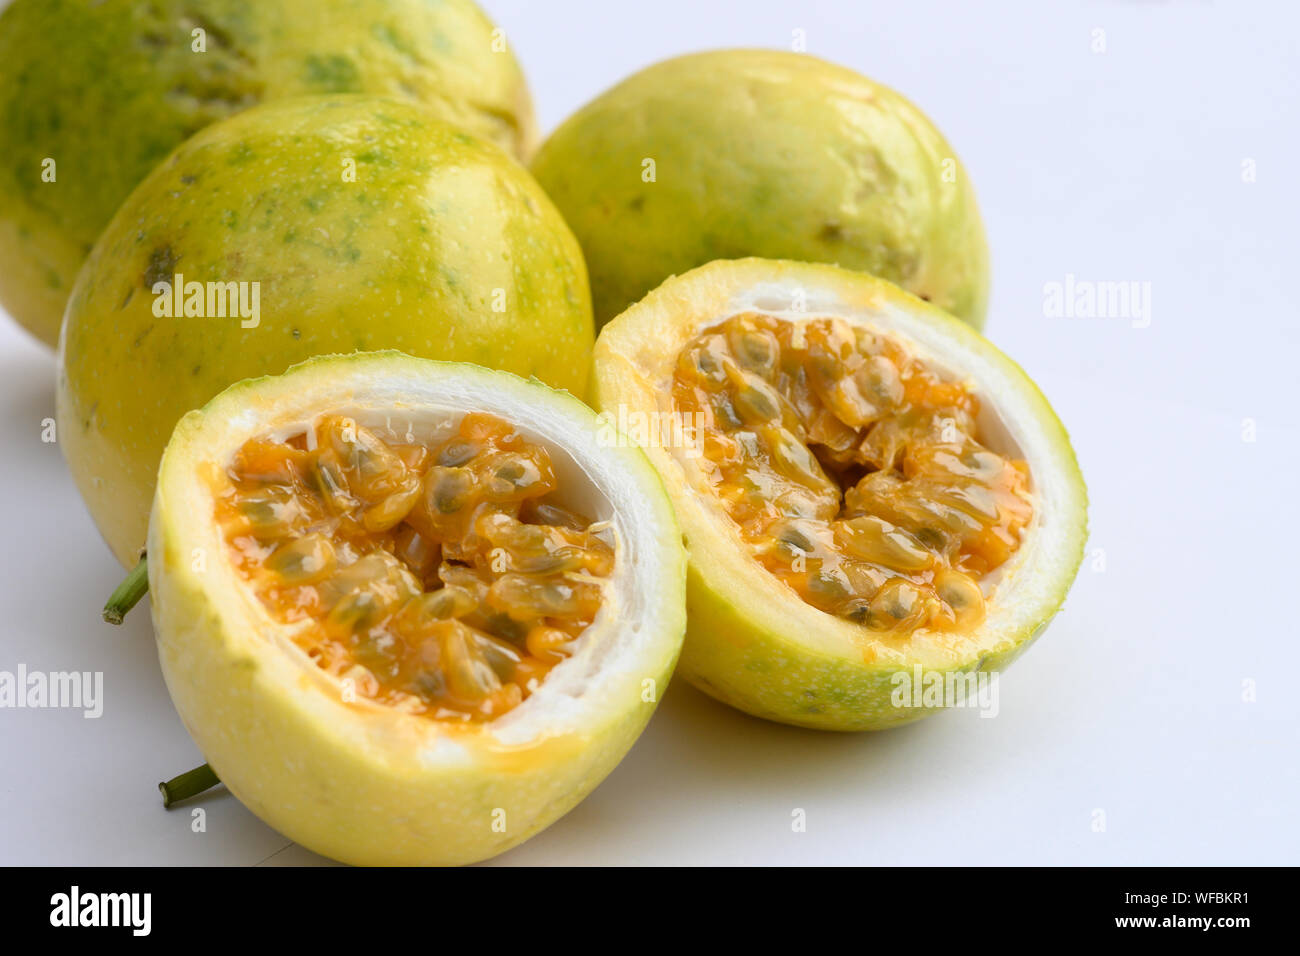 passion fruit isolated on white background Stock Photo